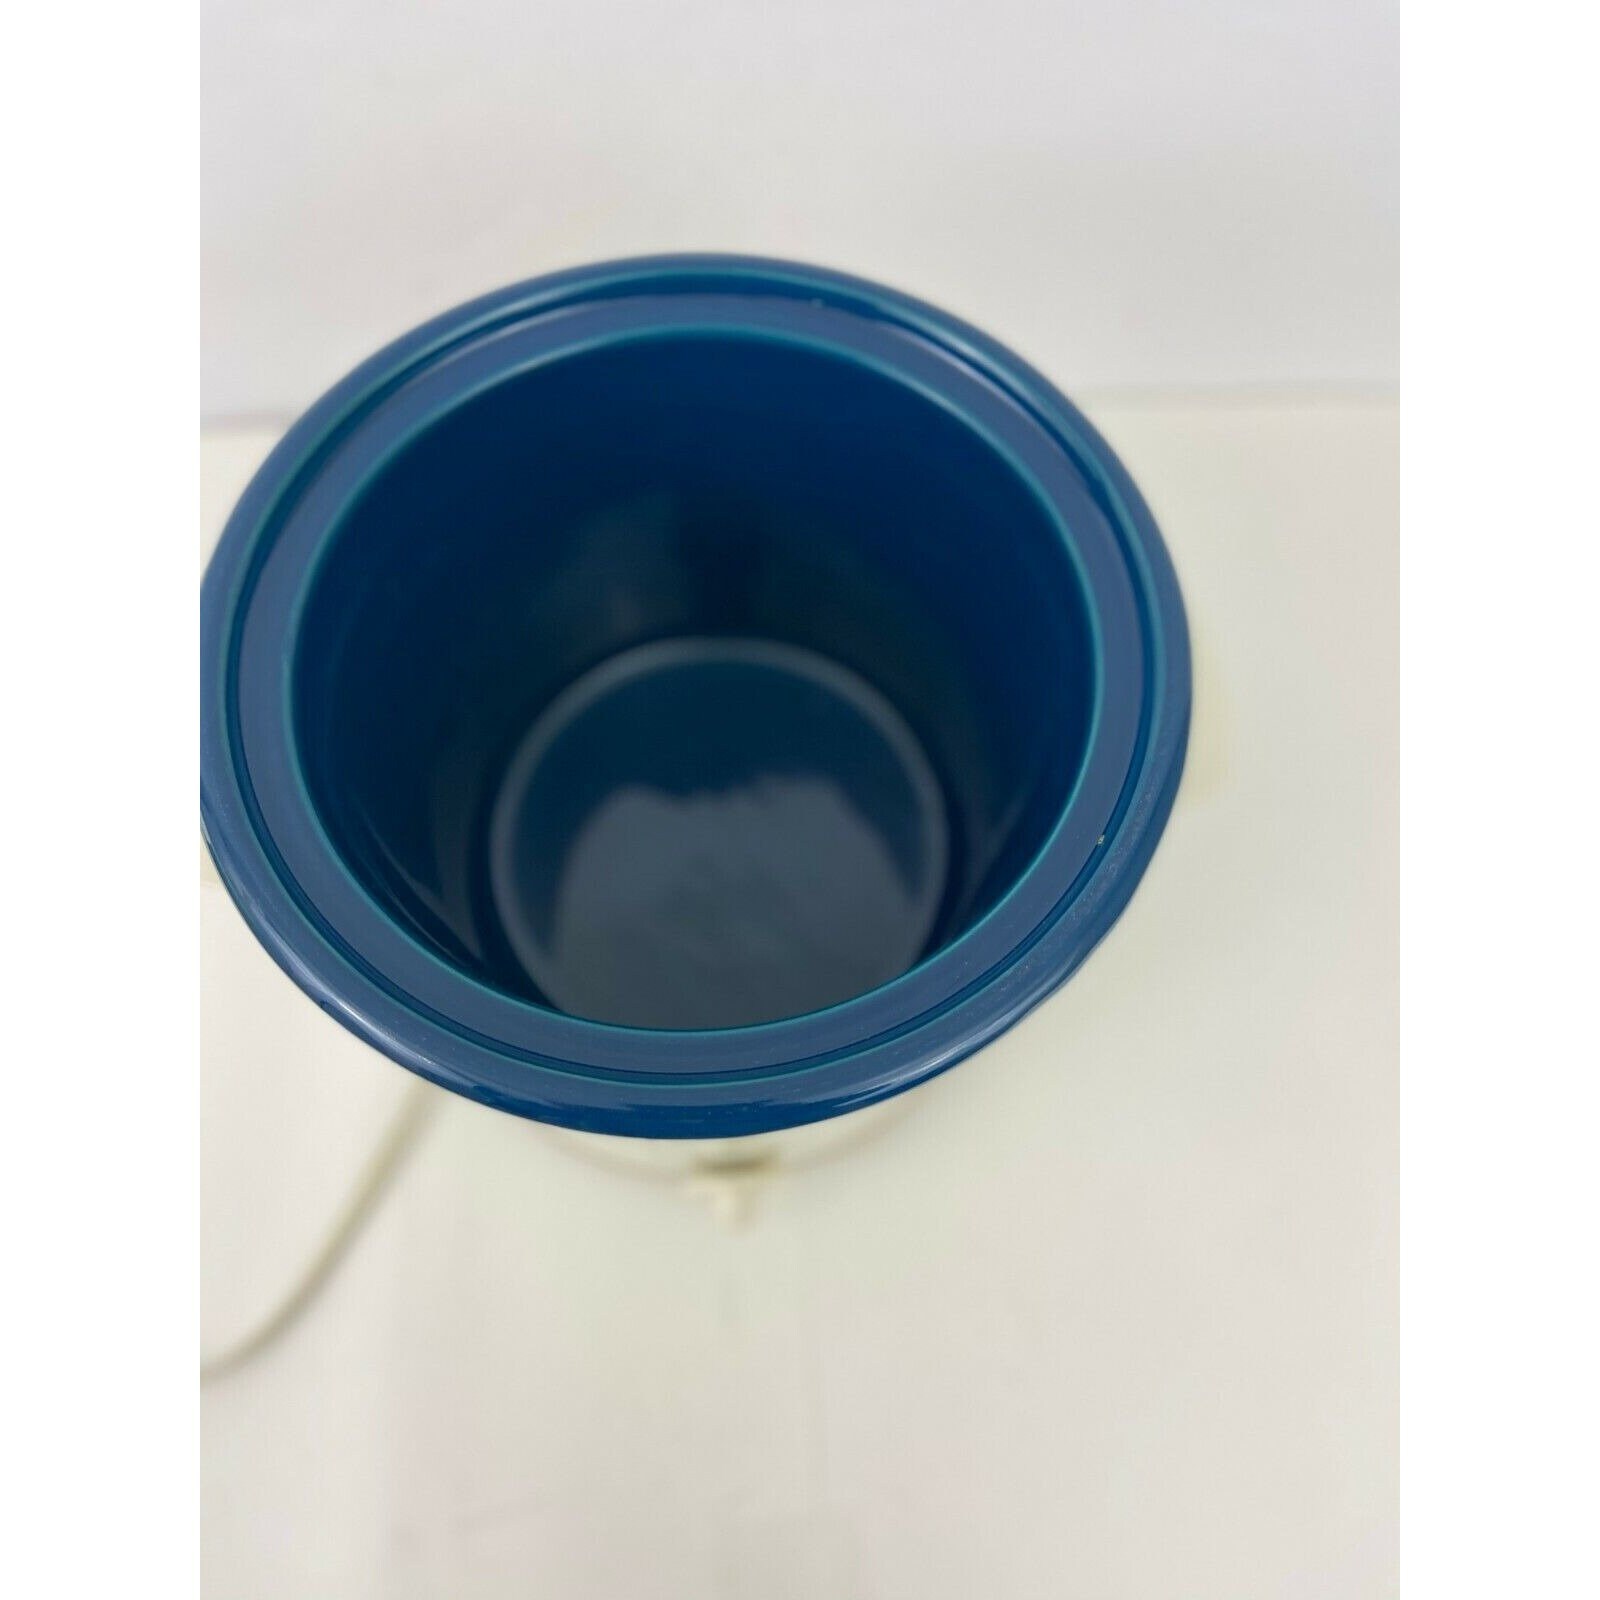 Vintage RIVAL 3½ Qt Crock Pot Slow Cooker Stoneware 3150 BLUE/BEIGE plastic  lid